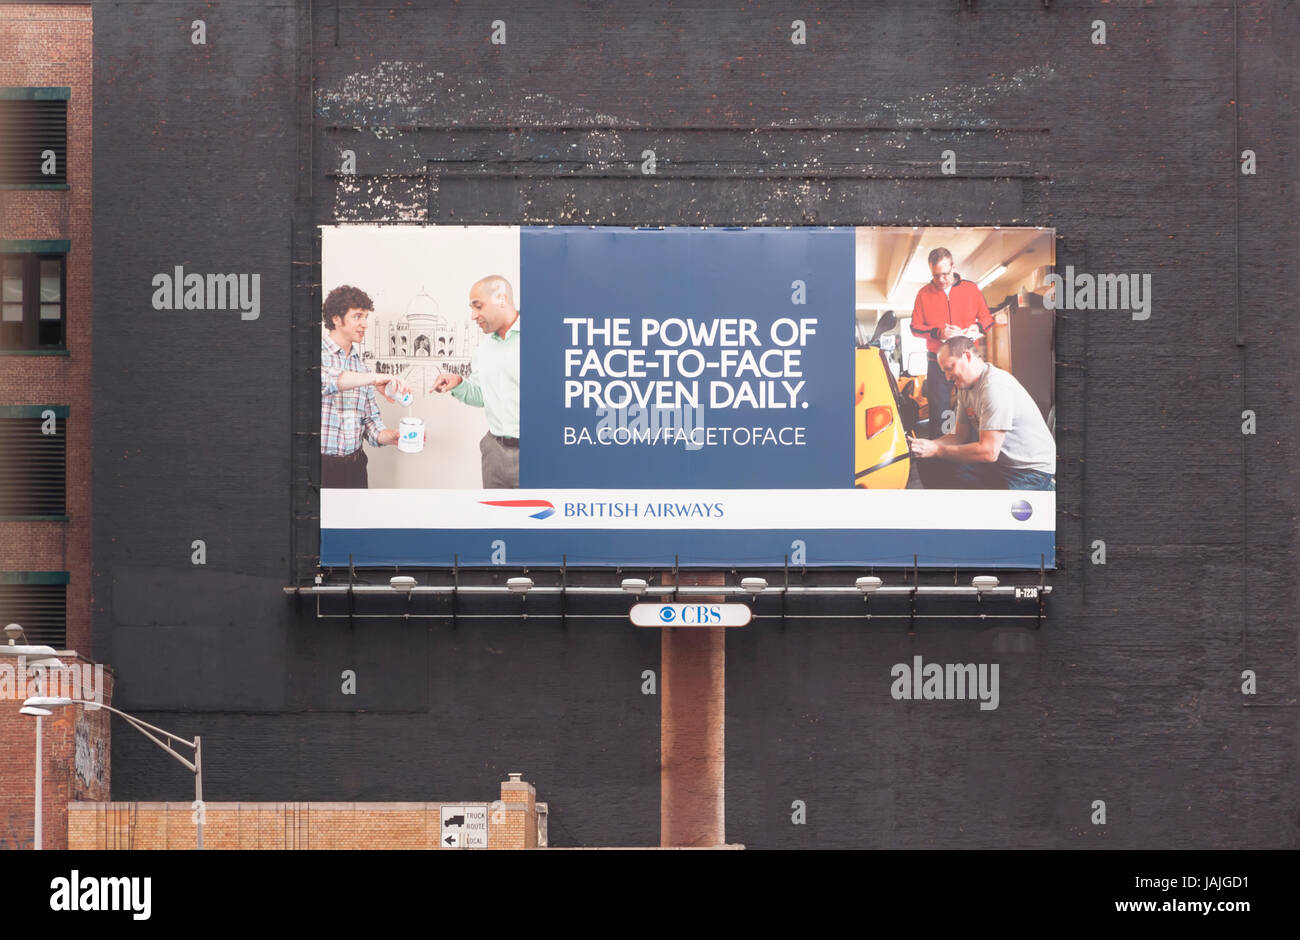 Un panneau publicitaire vantant la puissance de la communication face à face et l'interaction. Banque D'Images